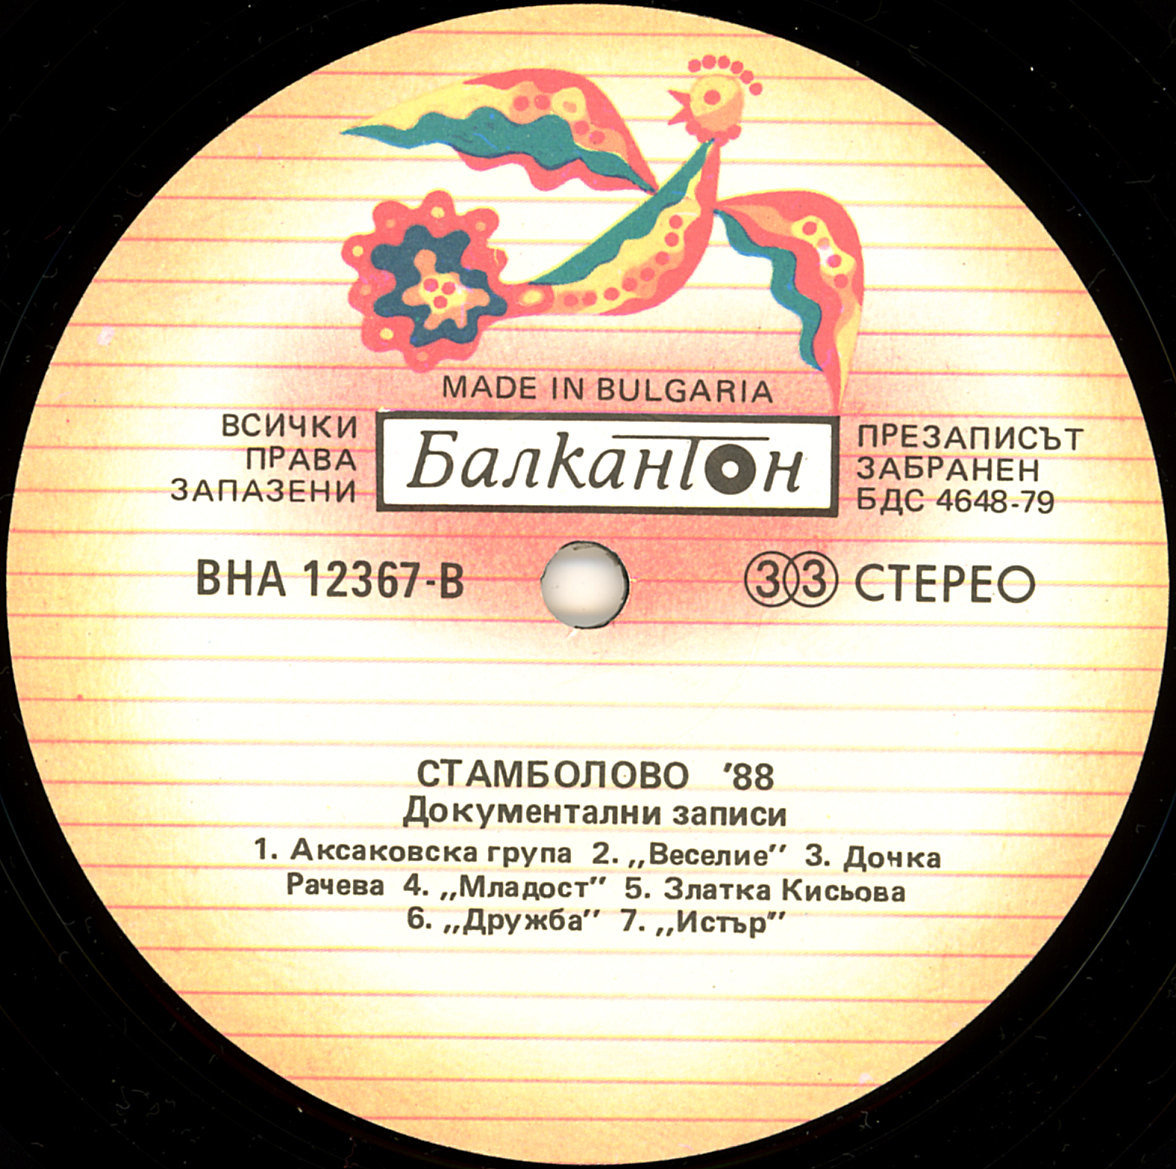 Стамболово '88 - Документални записи от III нац. среща на инстументалните групи за бълг. народна музика